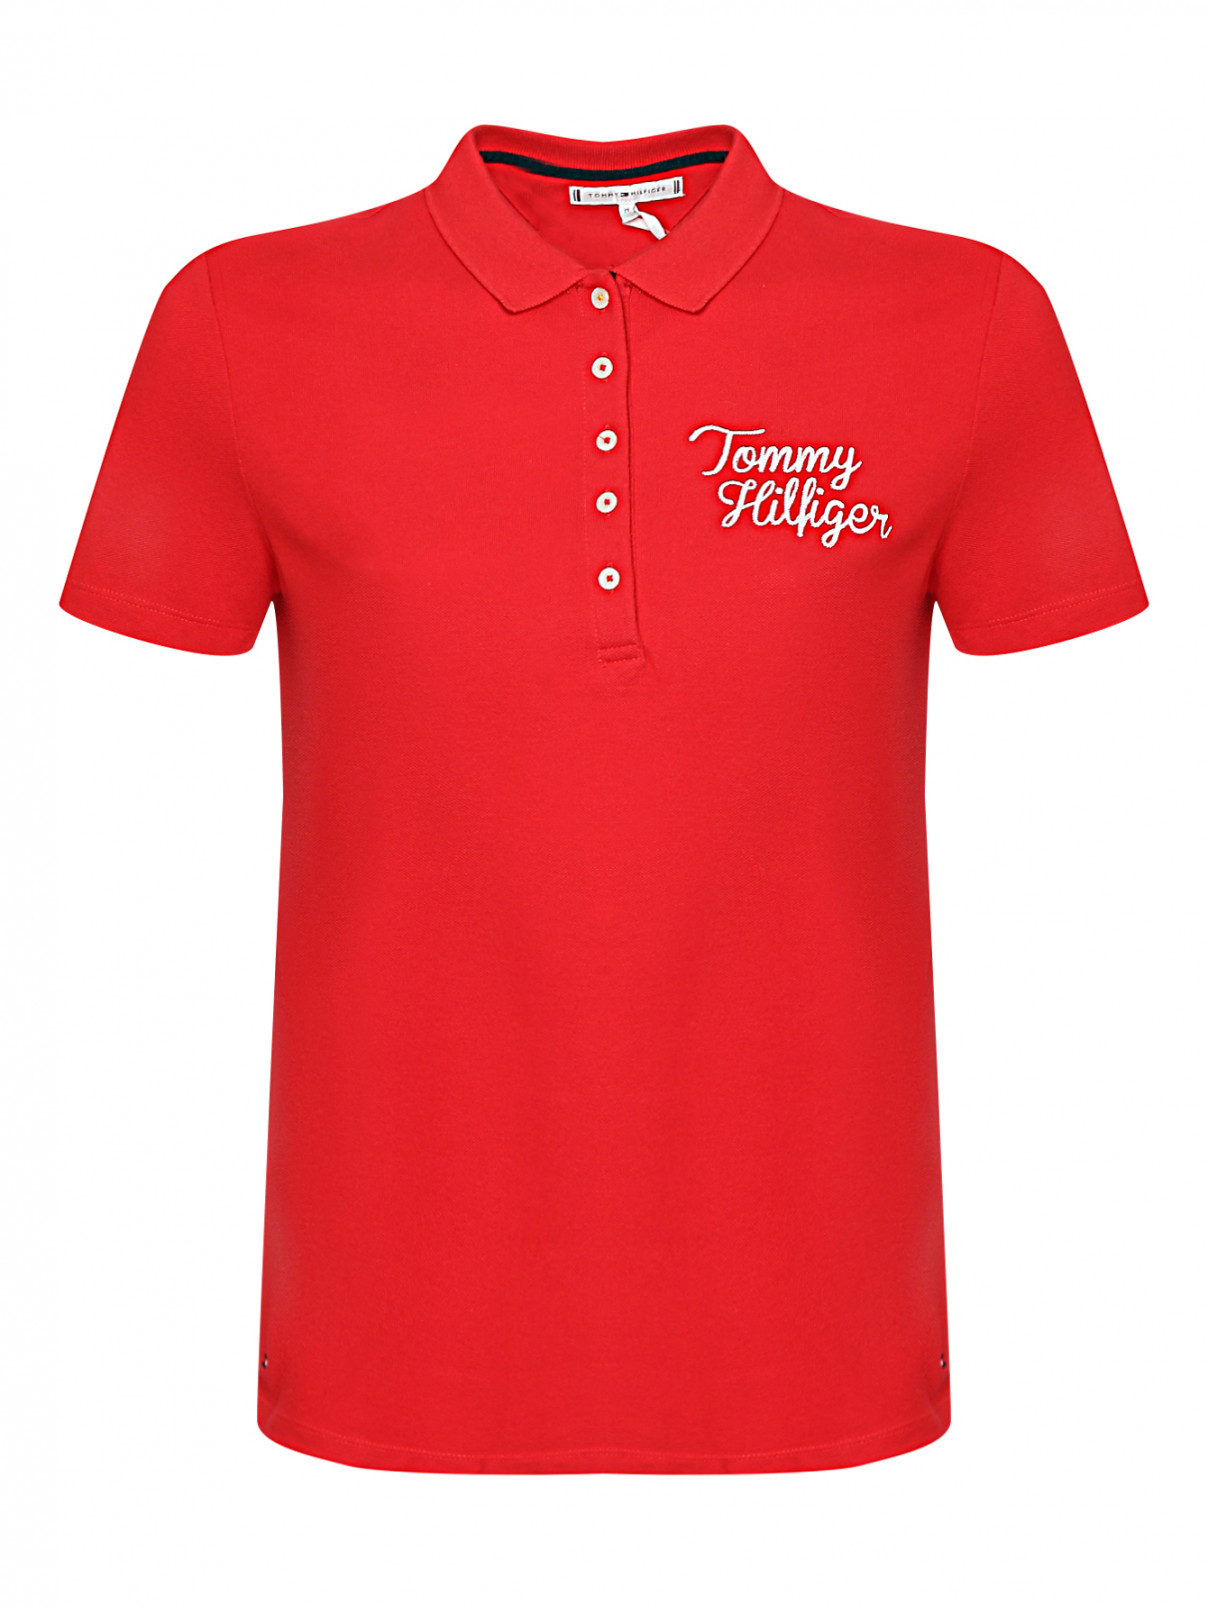 Поло из хлопка с вышивкой Tommy Hilfiger  –  Общий вид  – Цвет:  Красный